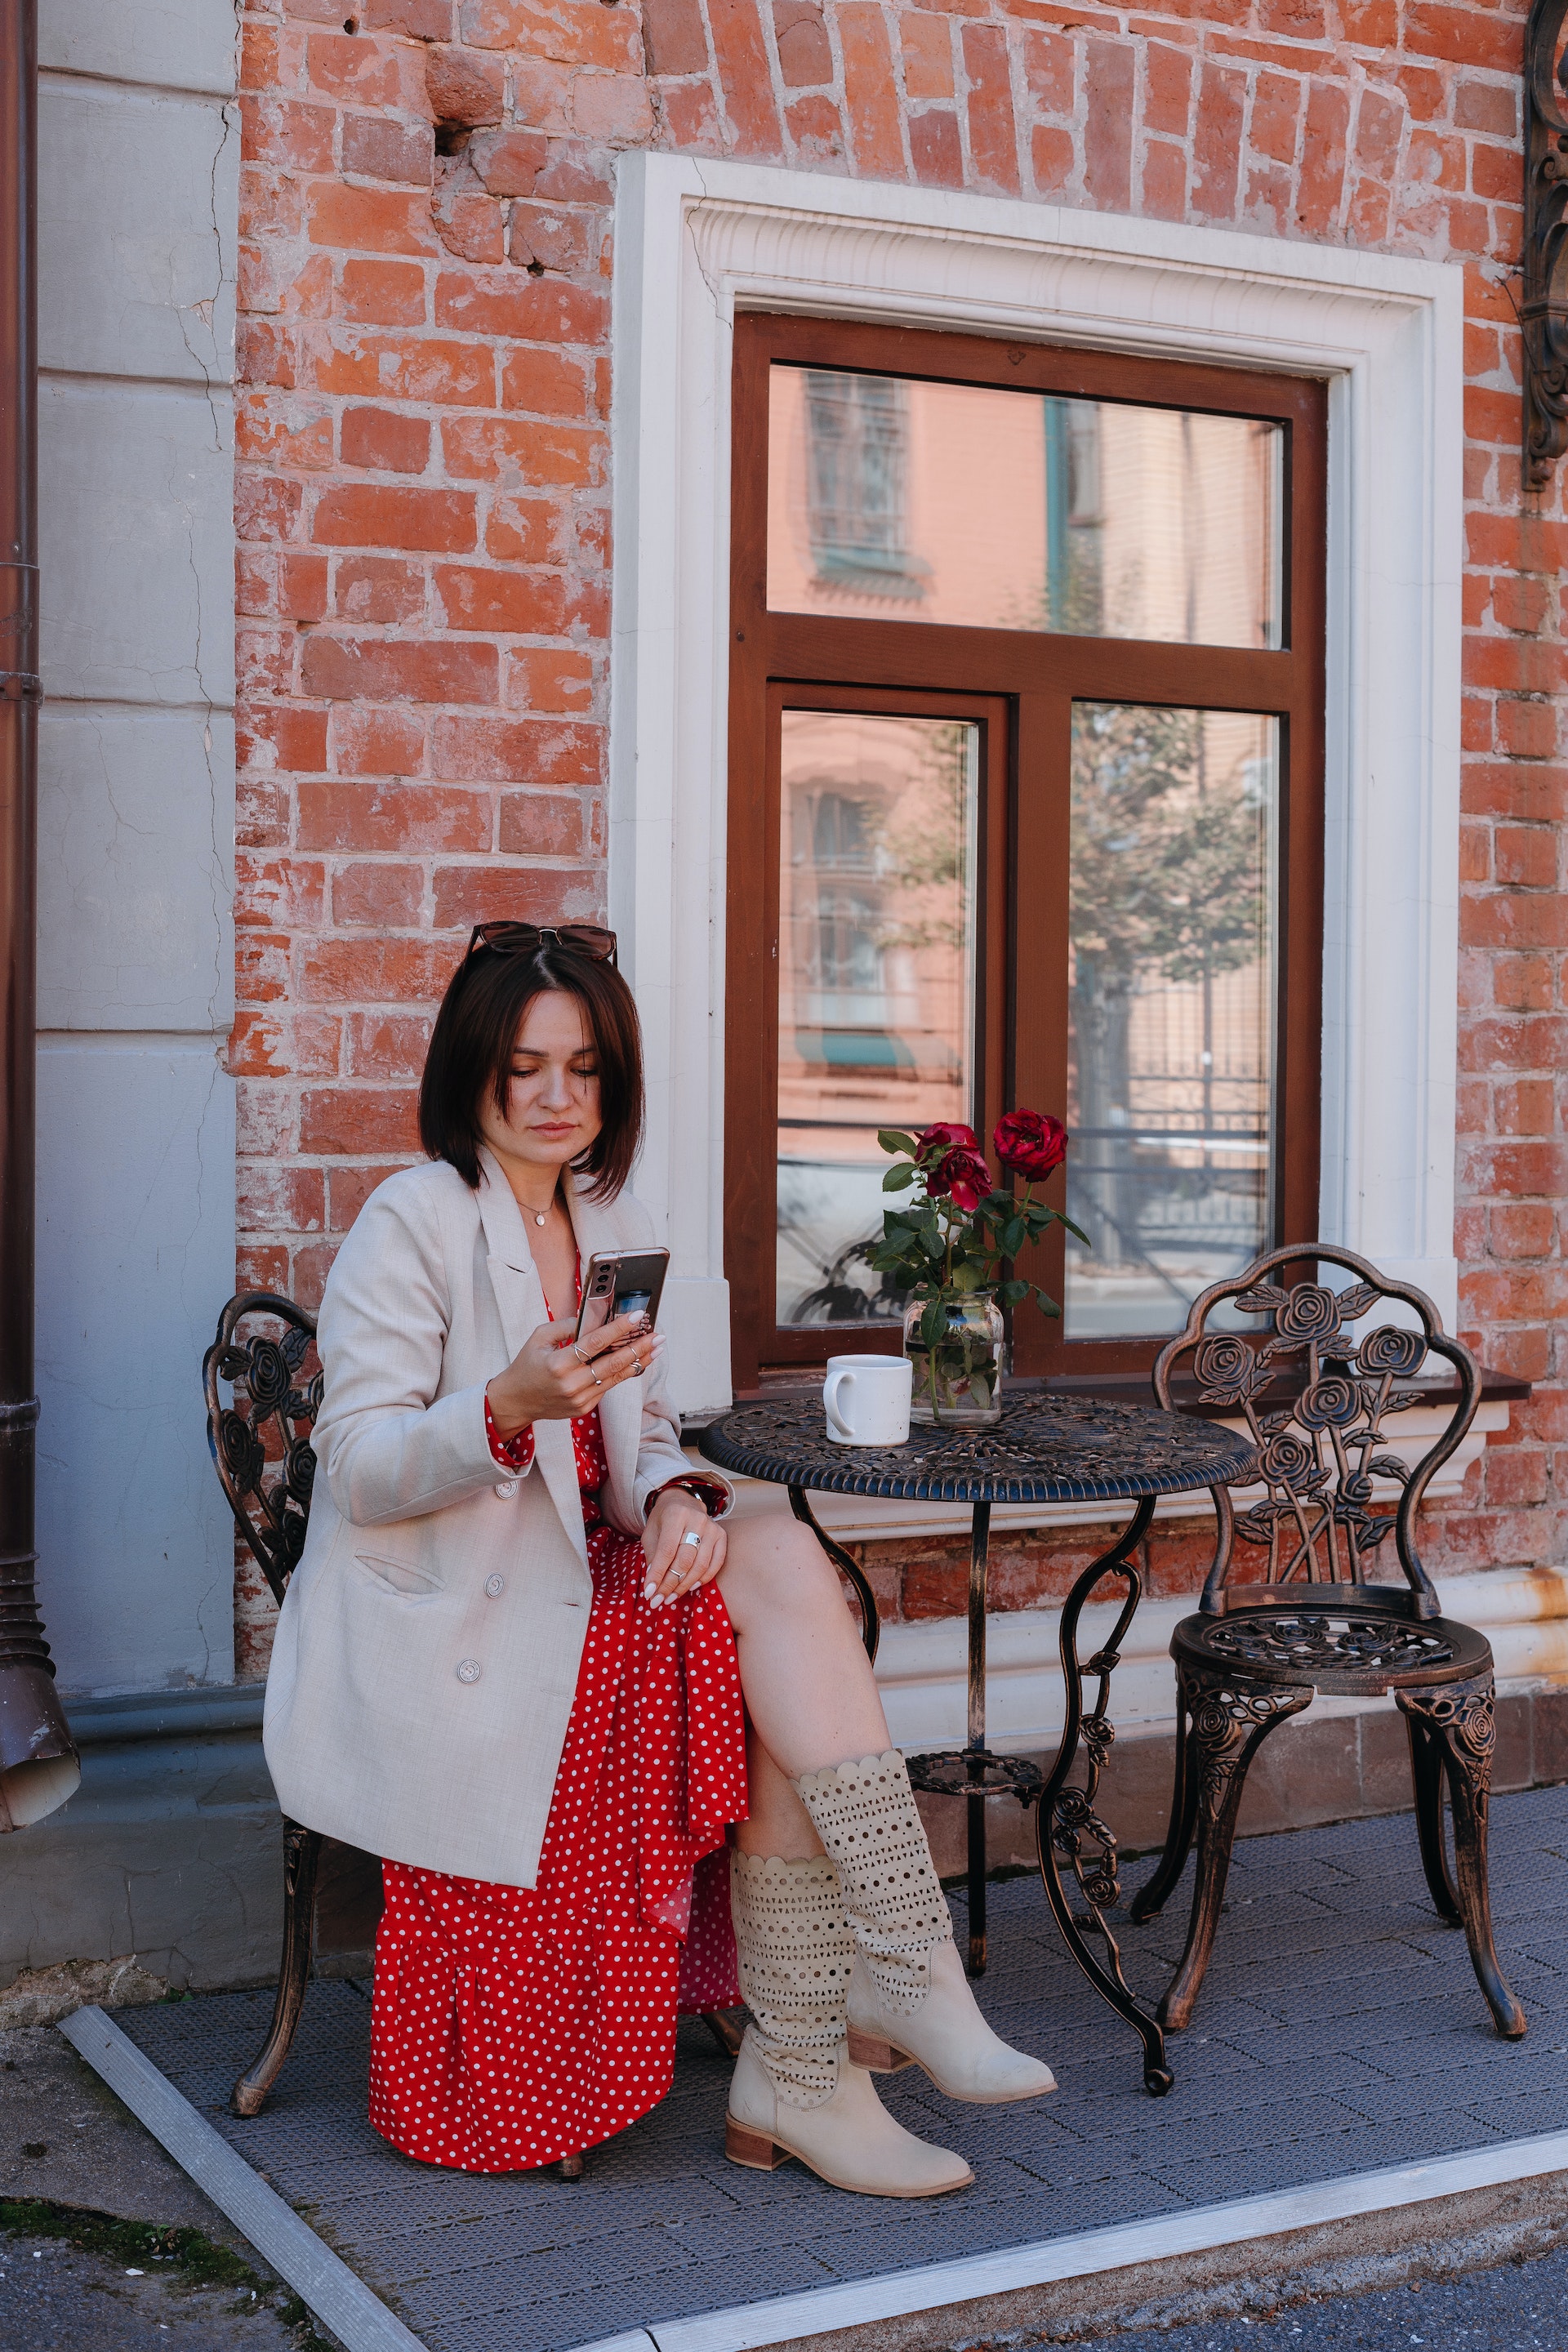 Une femme assise à un café sur le trottoir tout en consultant son téléphone portable | Source : Pexels